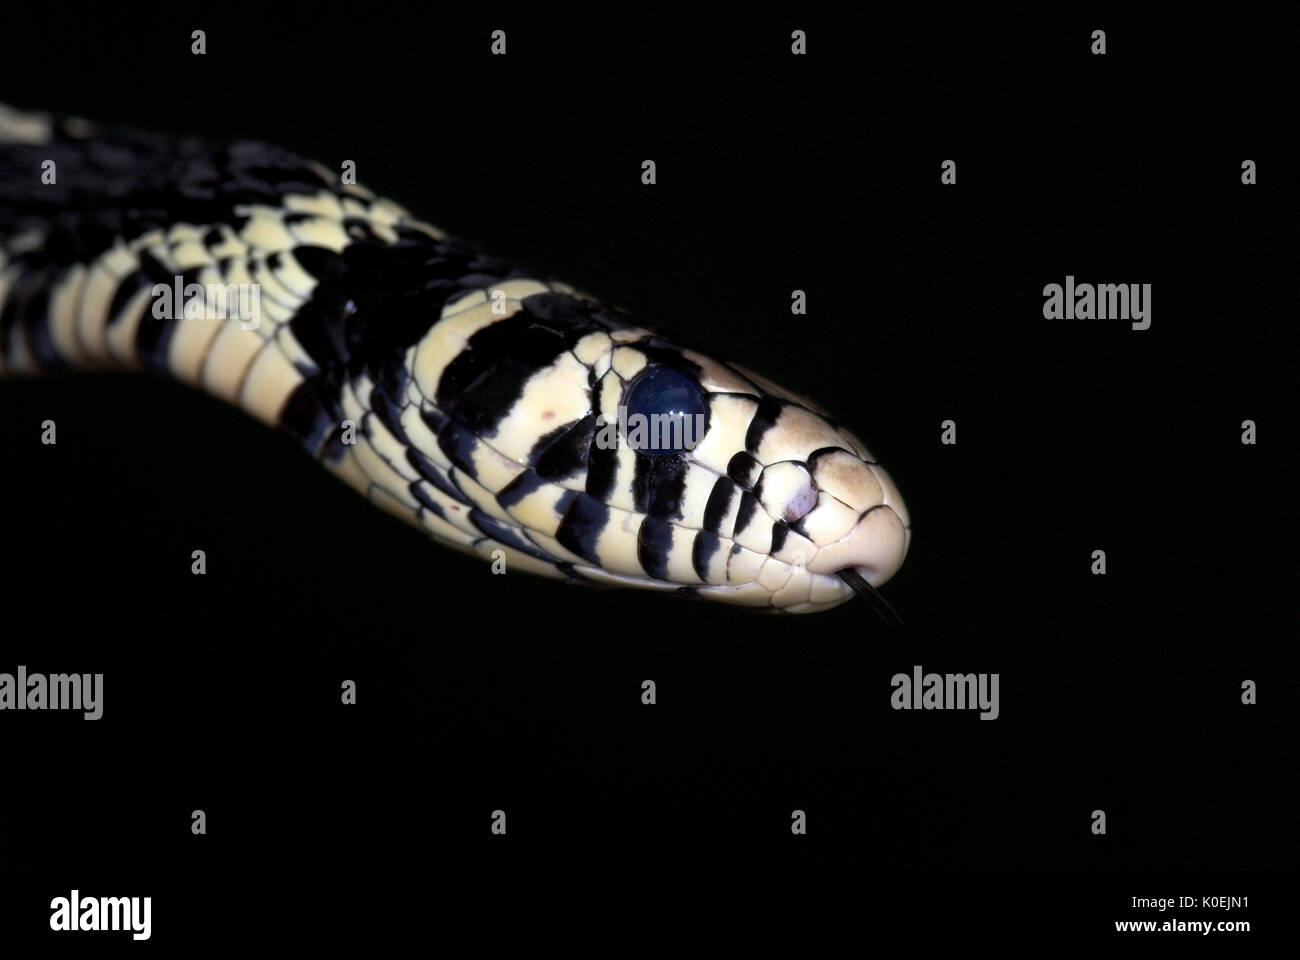 Tigre Rata Spilotes pullatus pullatus, serpiente, colubrids encontrados en América Central y del Sur, blanco y negro, Retrato Foto de stock